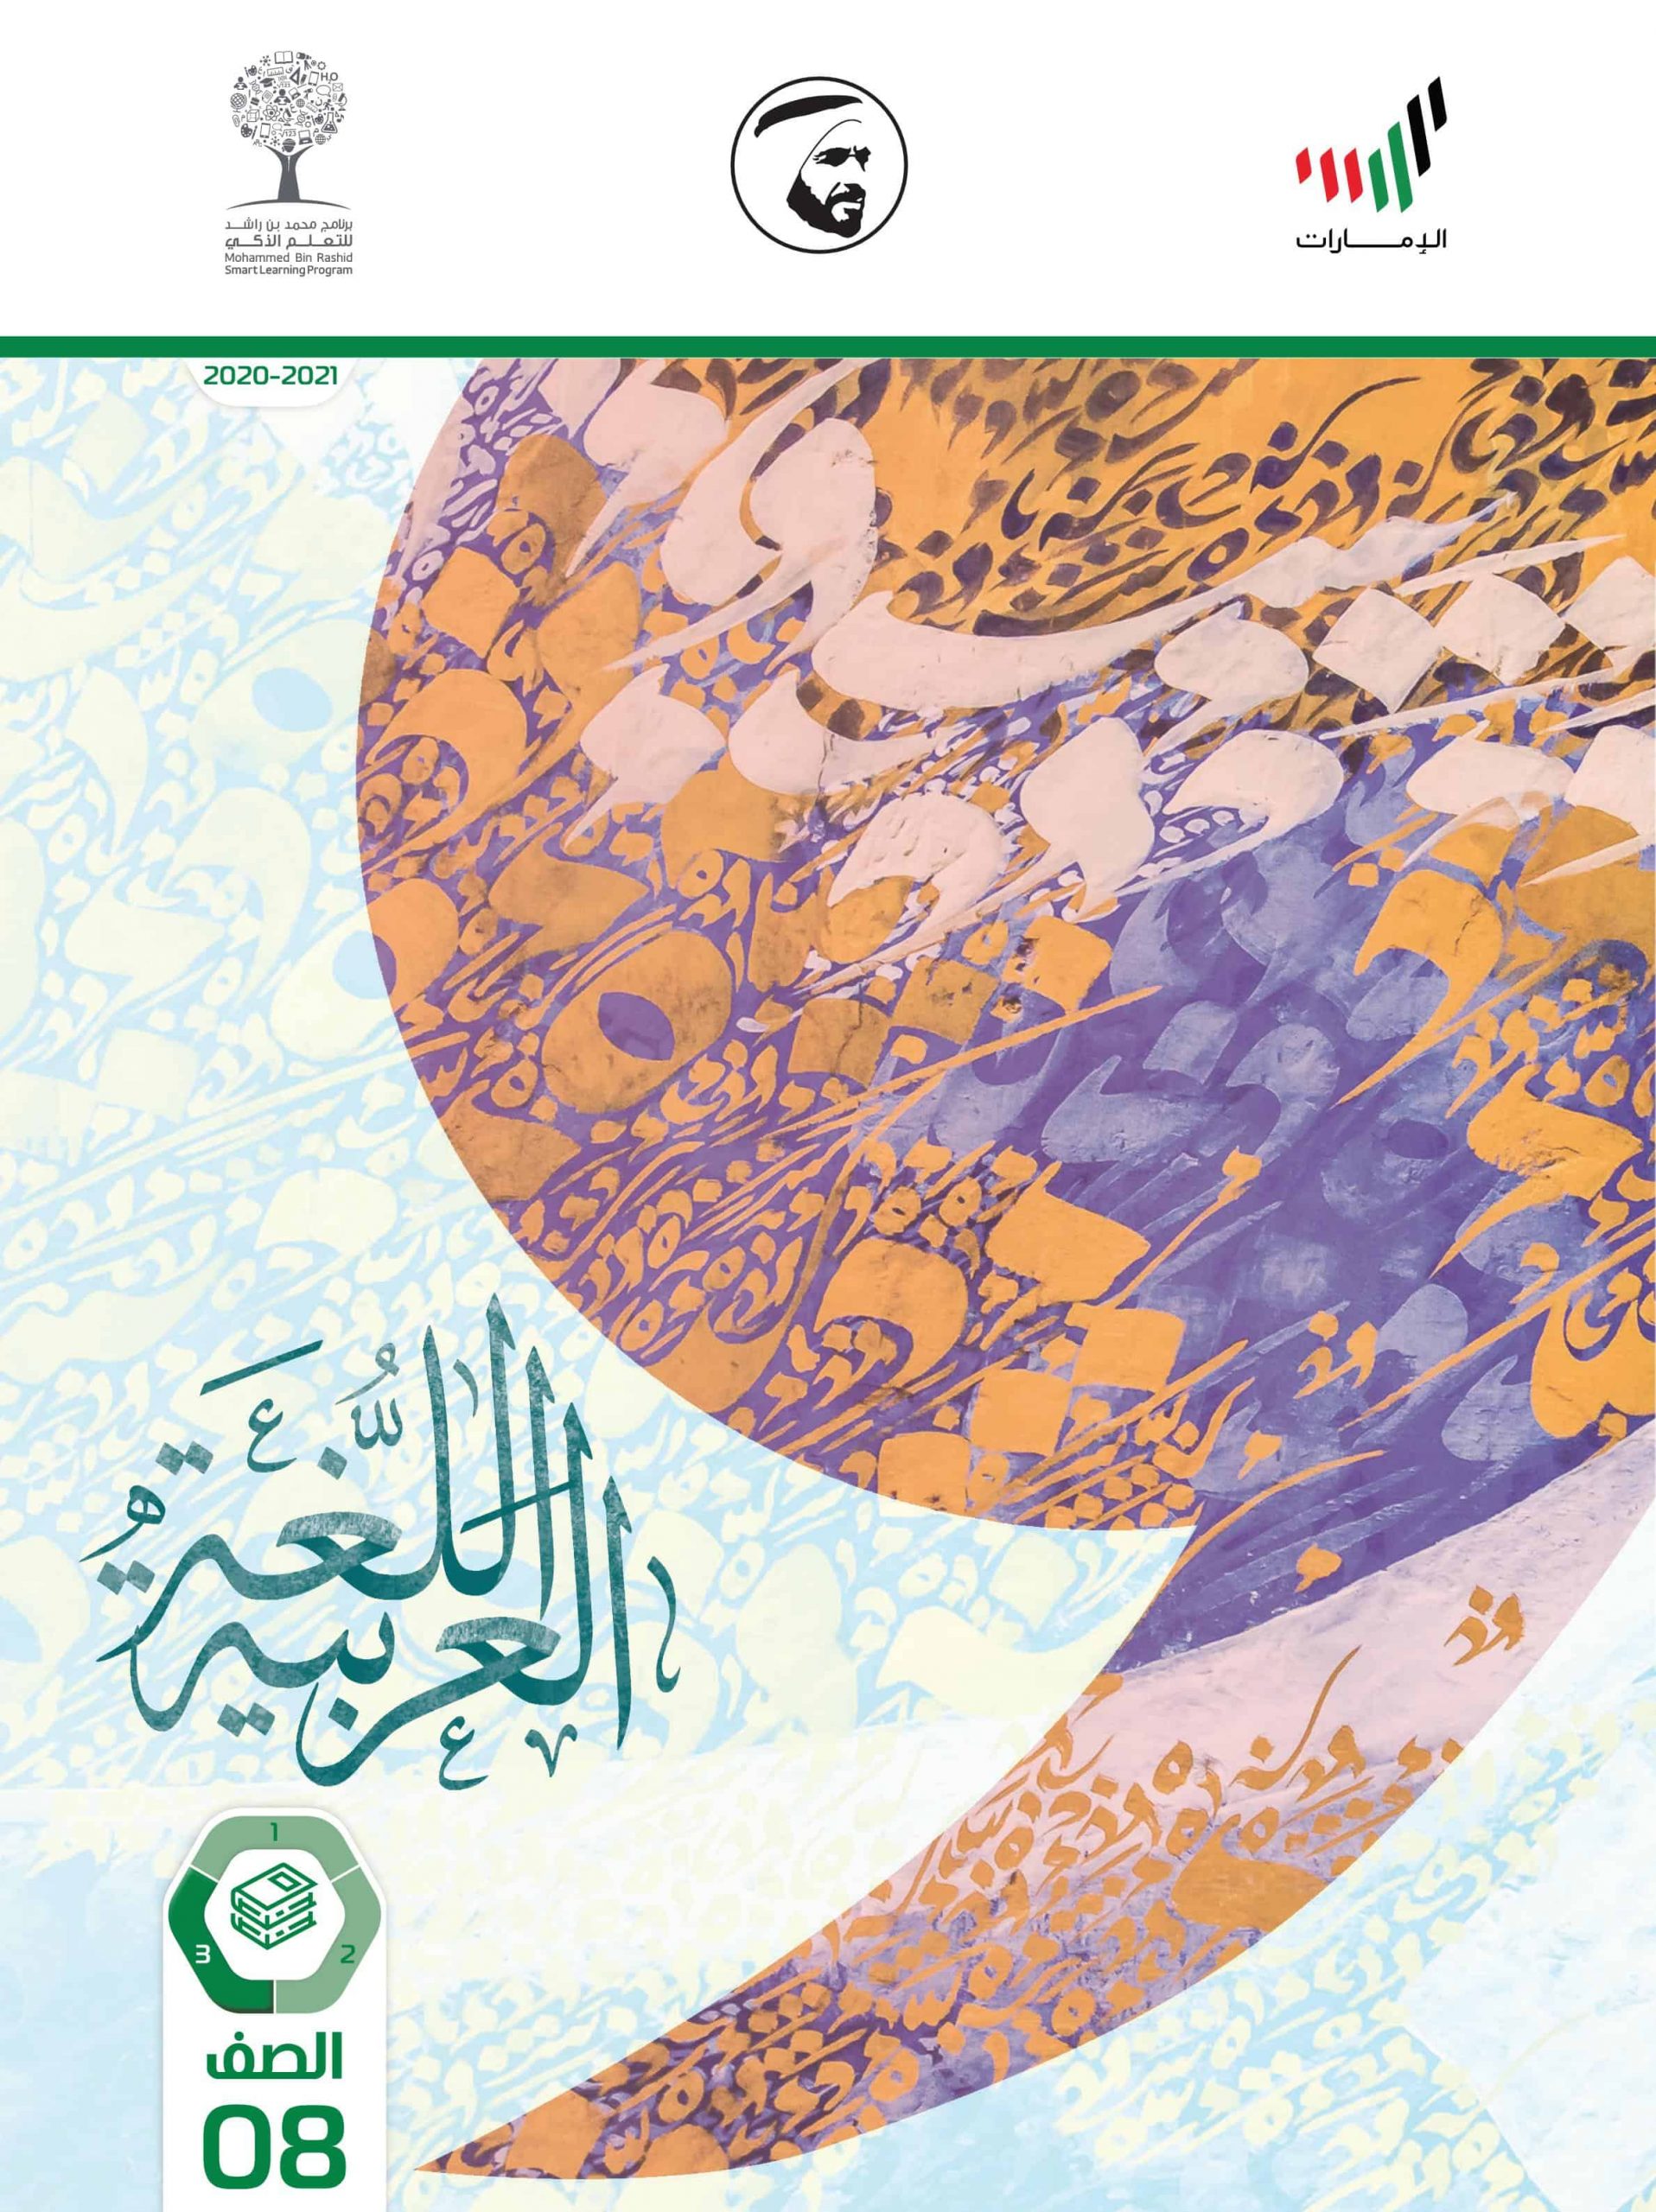 كتاب الطالب الفصل الدراسي الثالث 2020-2021 الصف الثامن مادة اللغة العربية 